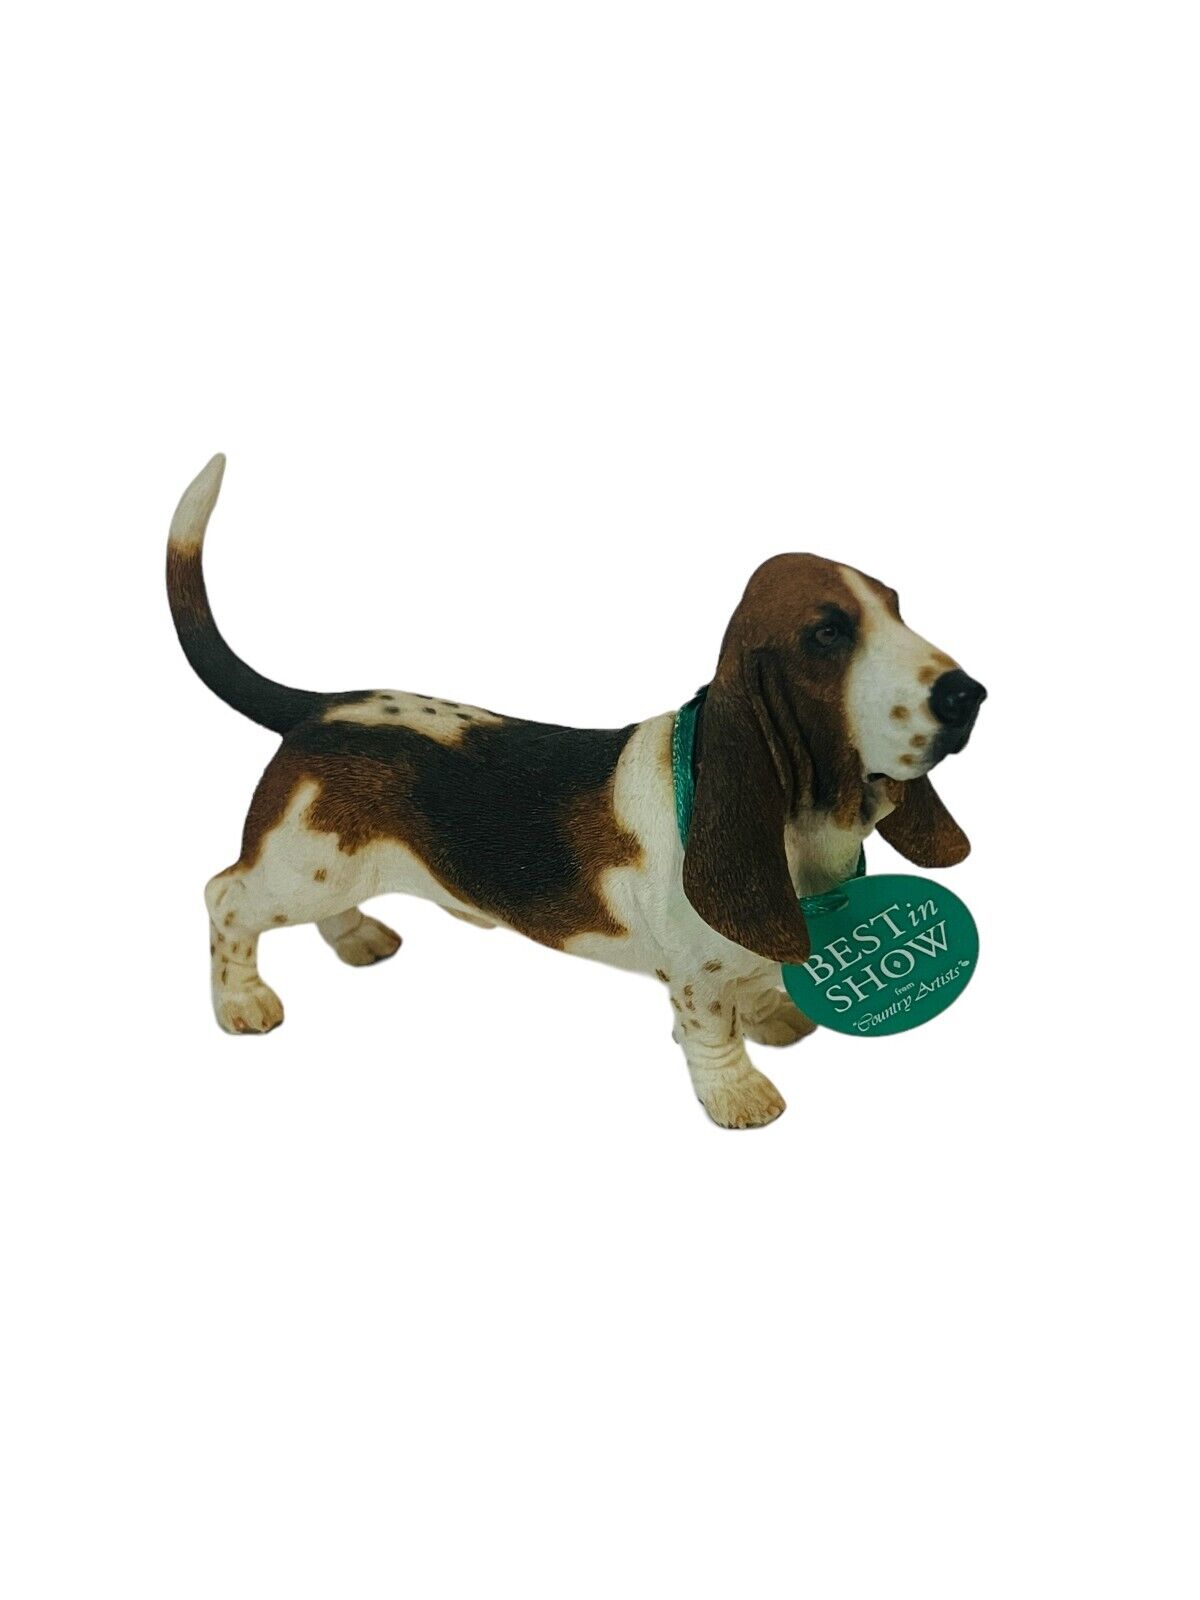 Country Artist Dog Figurine puppy puppies sculpture vtg Basset Hound Beagle gift